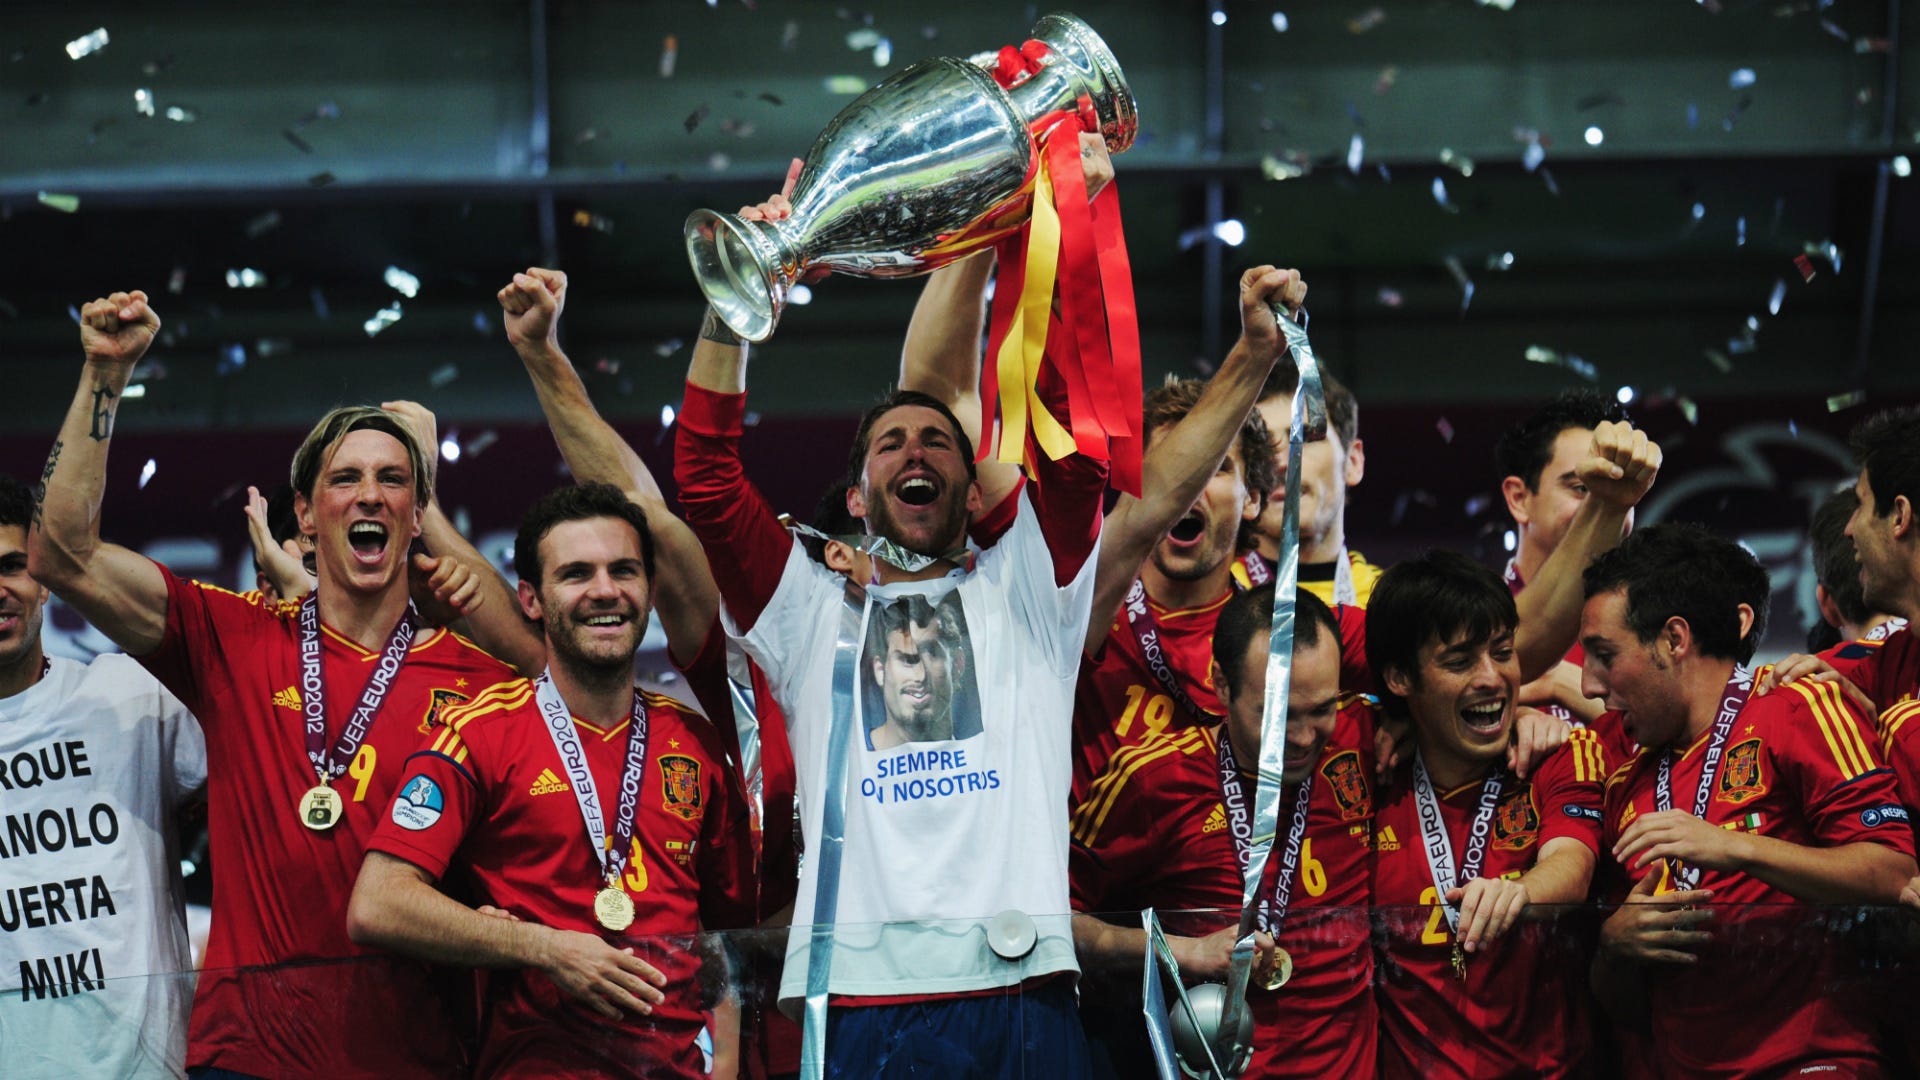 ¿Cuántos títulos tiene la selección española de fútbol